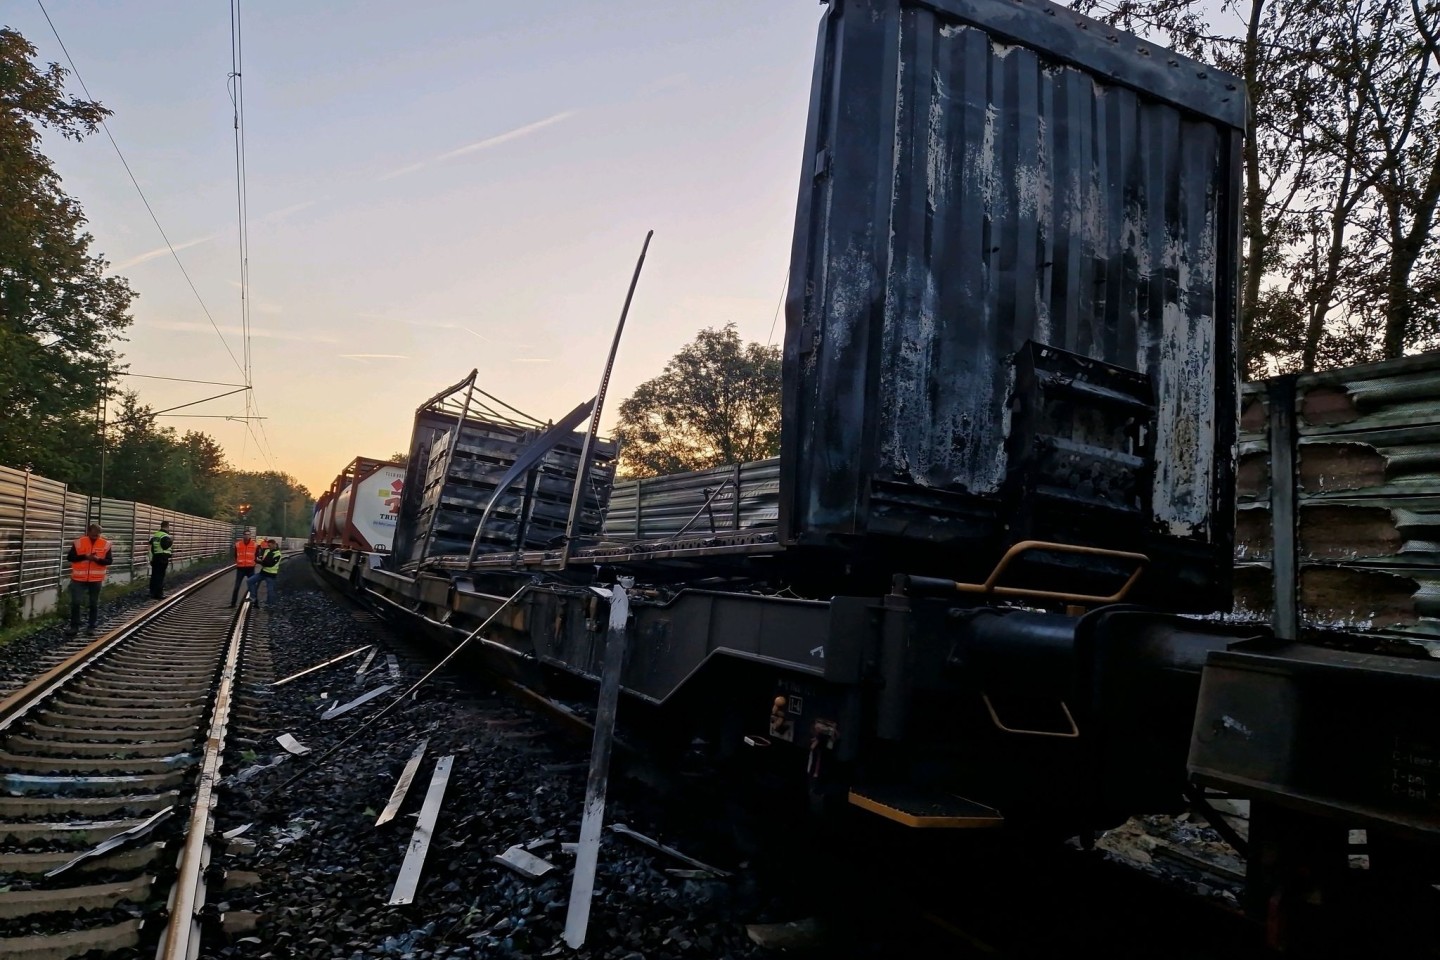 Beschädigte Waggons eines Güterzugs stehen nach einem Brand auf den Gleisen. Das Feuer hatte für Ausfälle und Verspätungen bei der Bahn gesorgt.